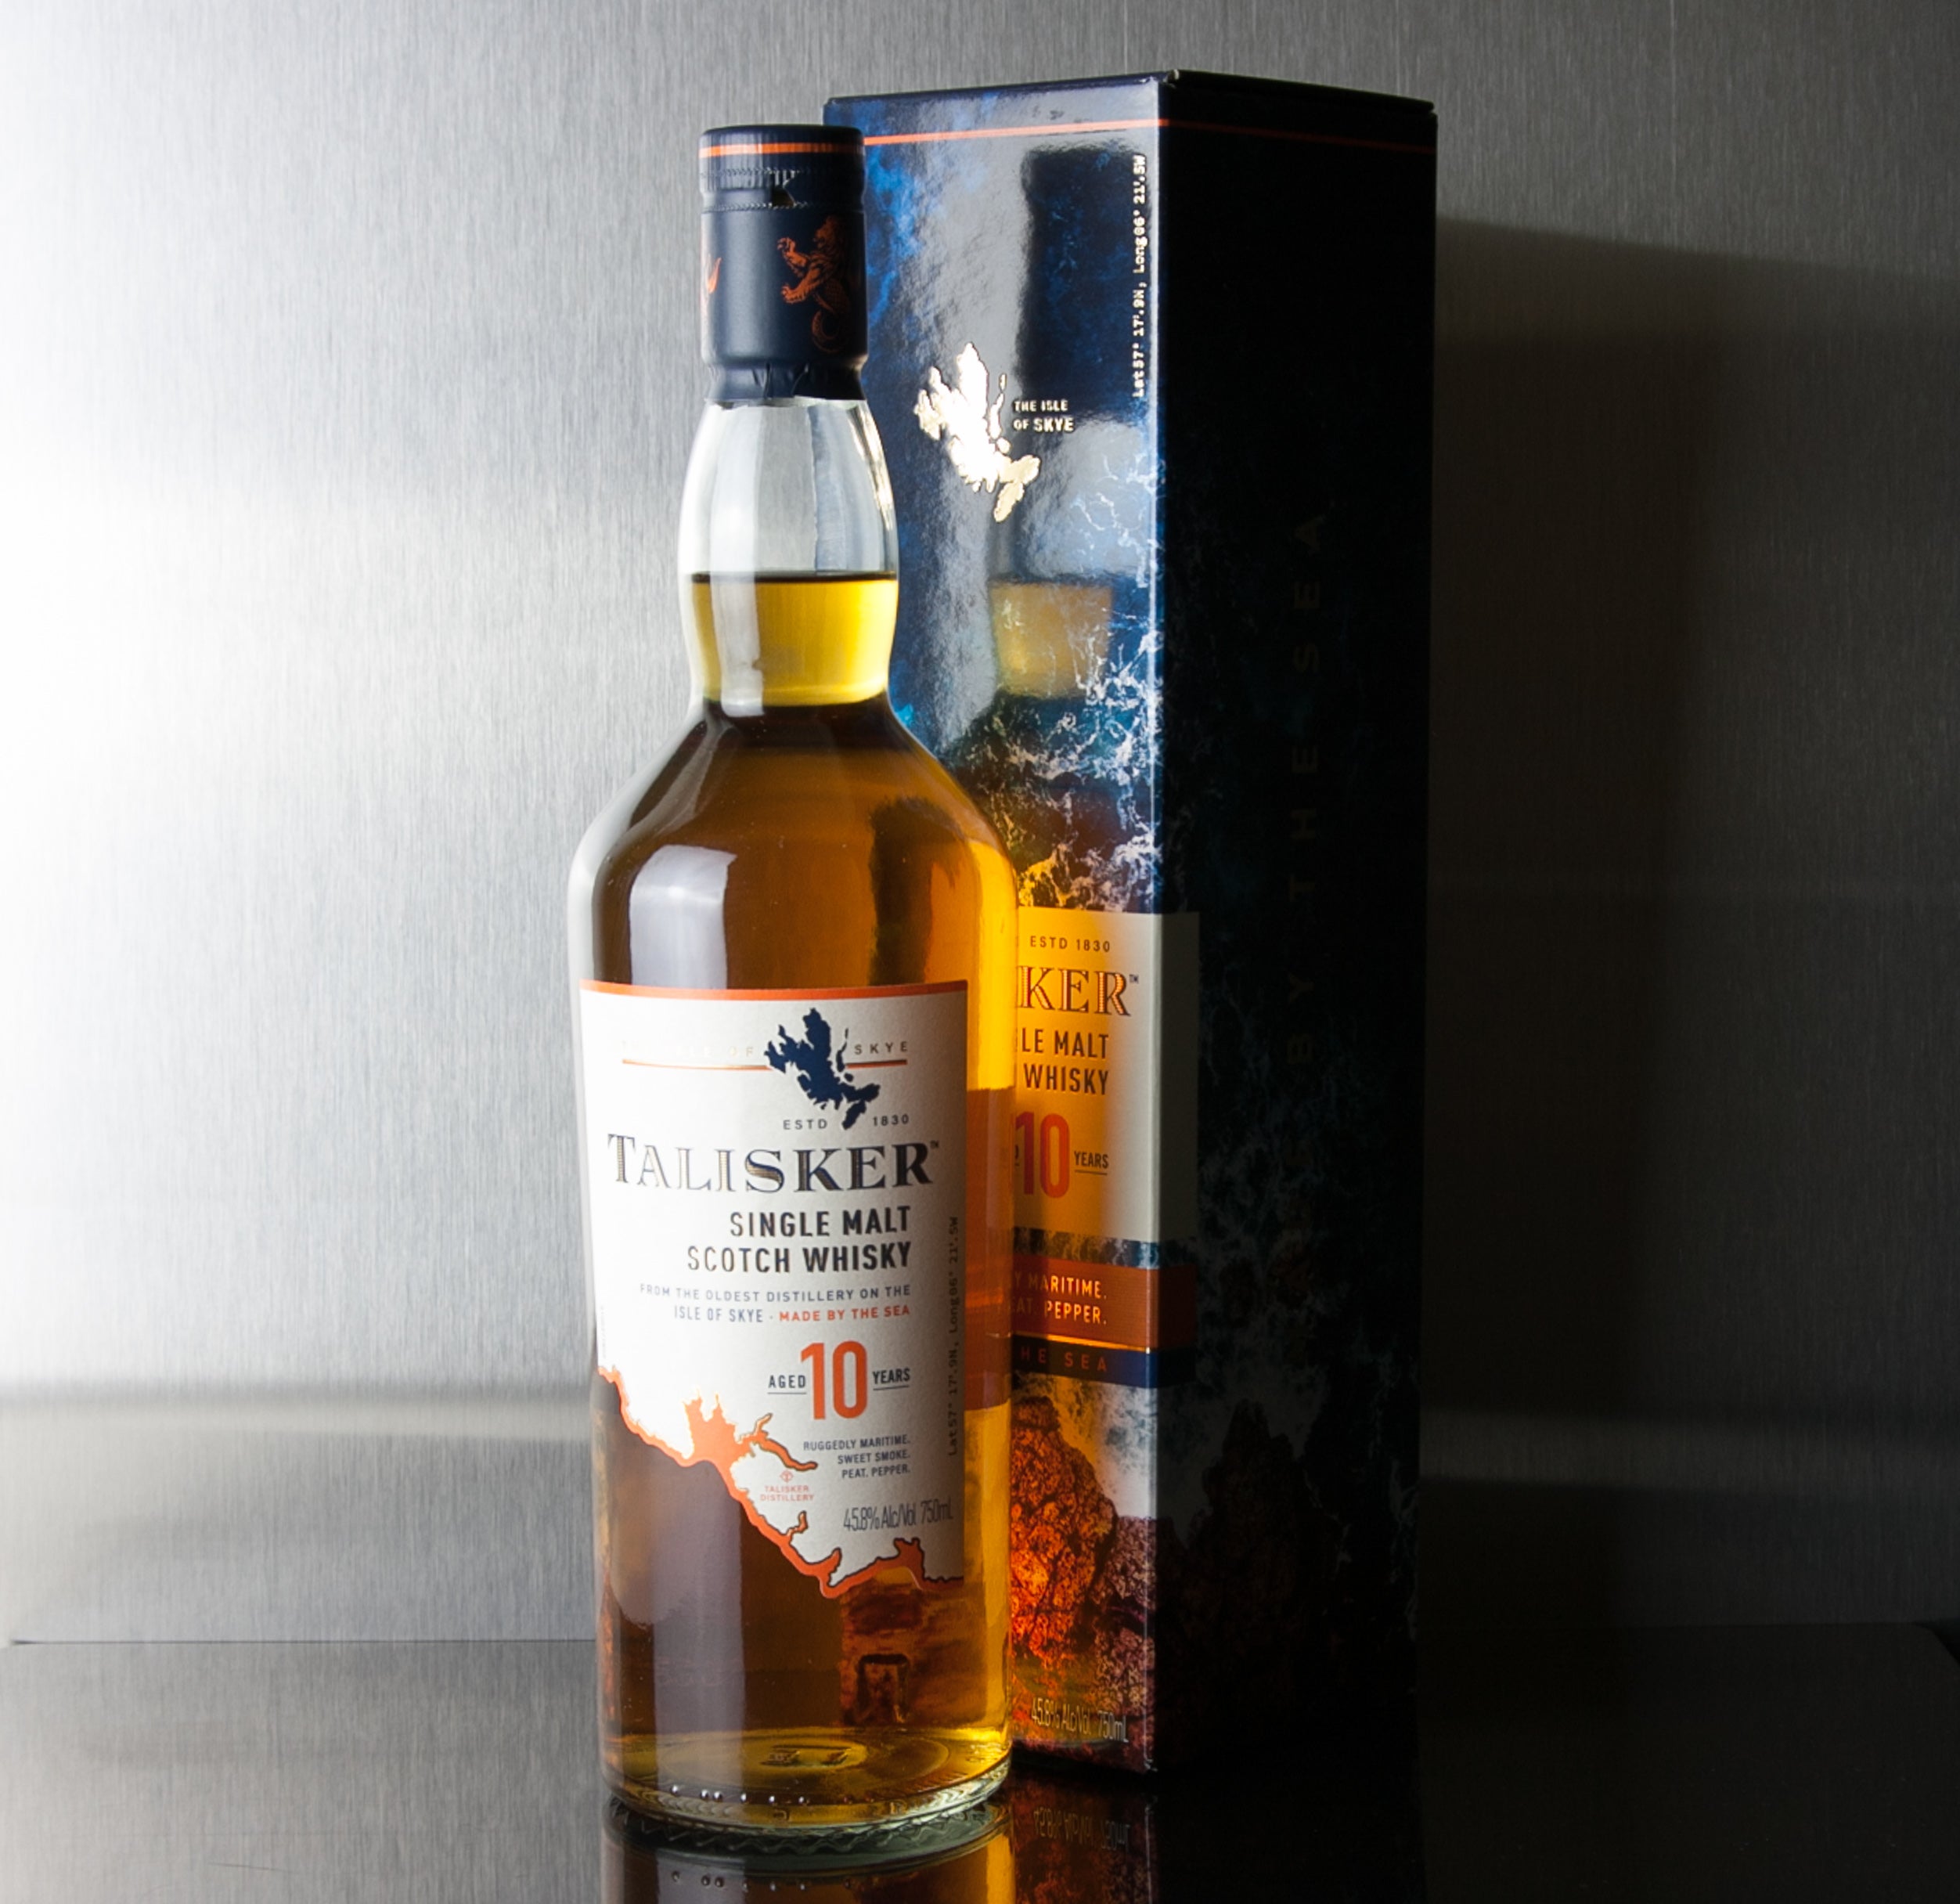 Whisky Ardbeg 10 ans Un-chillfiltered 70cl 46' - Islay - Le Comptoir  Irlandais